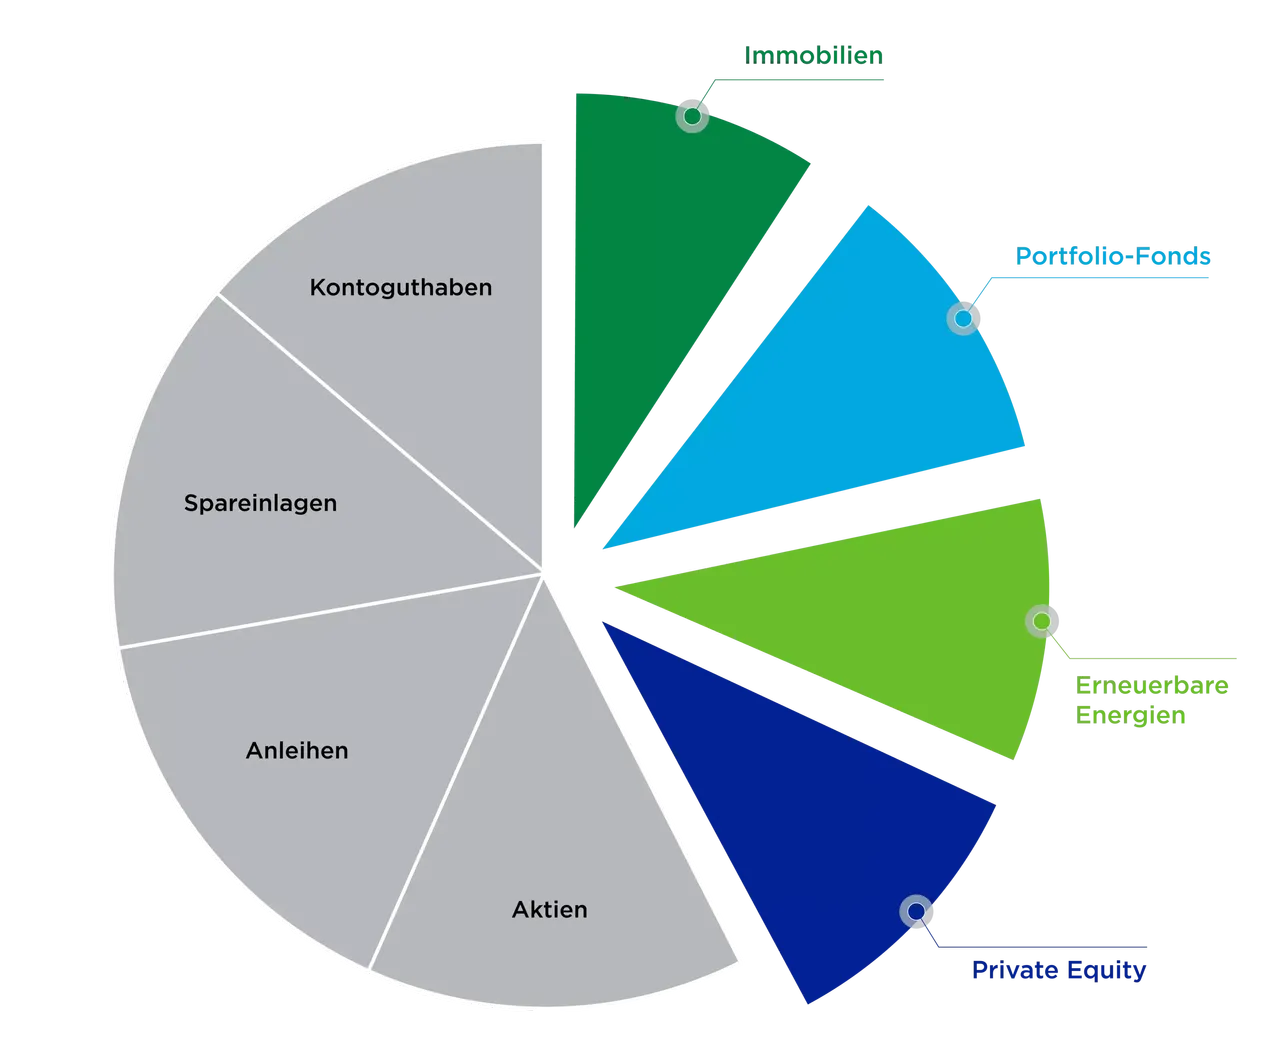 klimaVest: Die Grafik zeigt die verschiedenen Assetklassen in einem Kreisdiagramm. Hervorgehoben sind Immobilien, Portfolio-Fonds, Erneuerbare Energien und Private Equity.